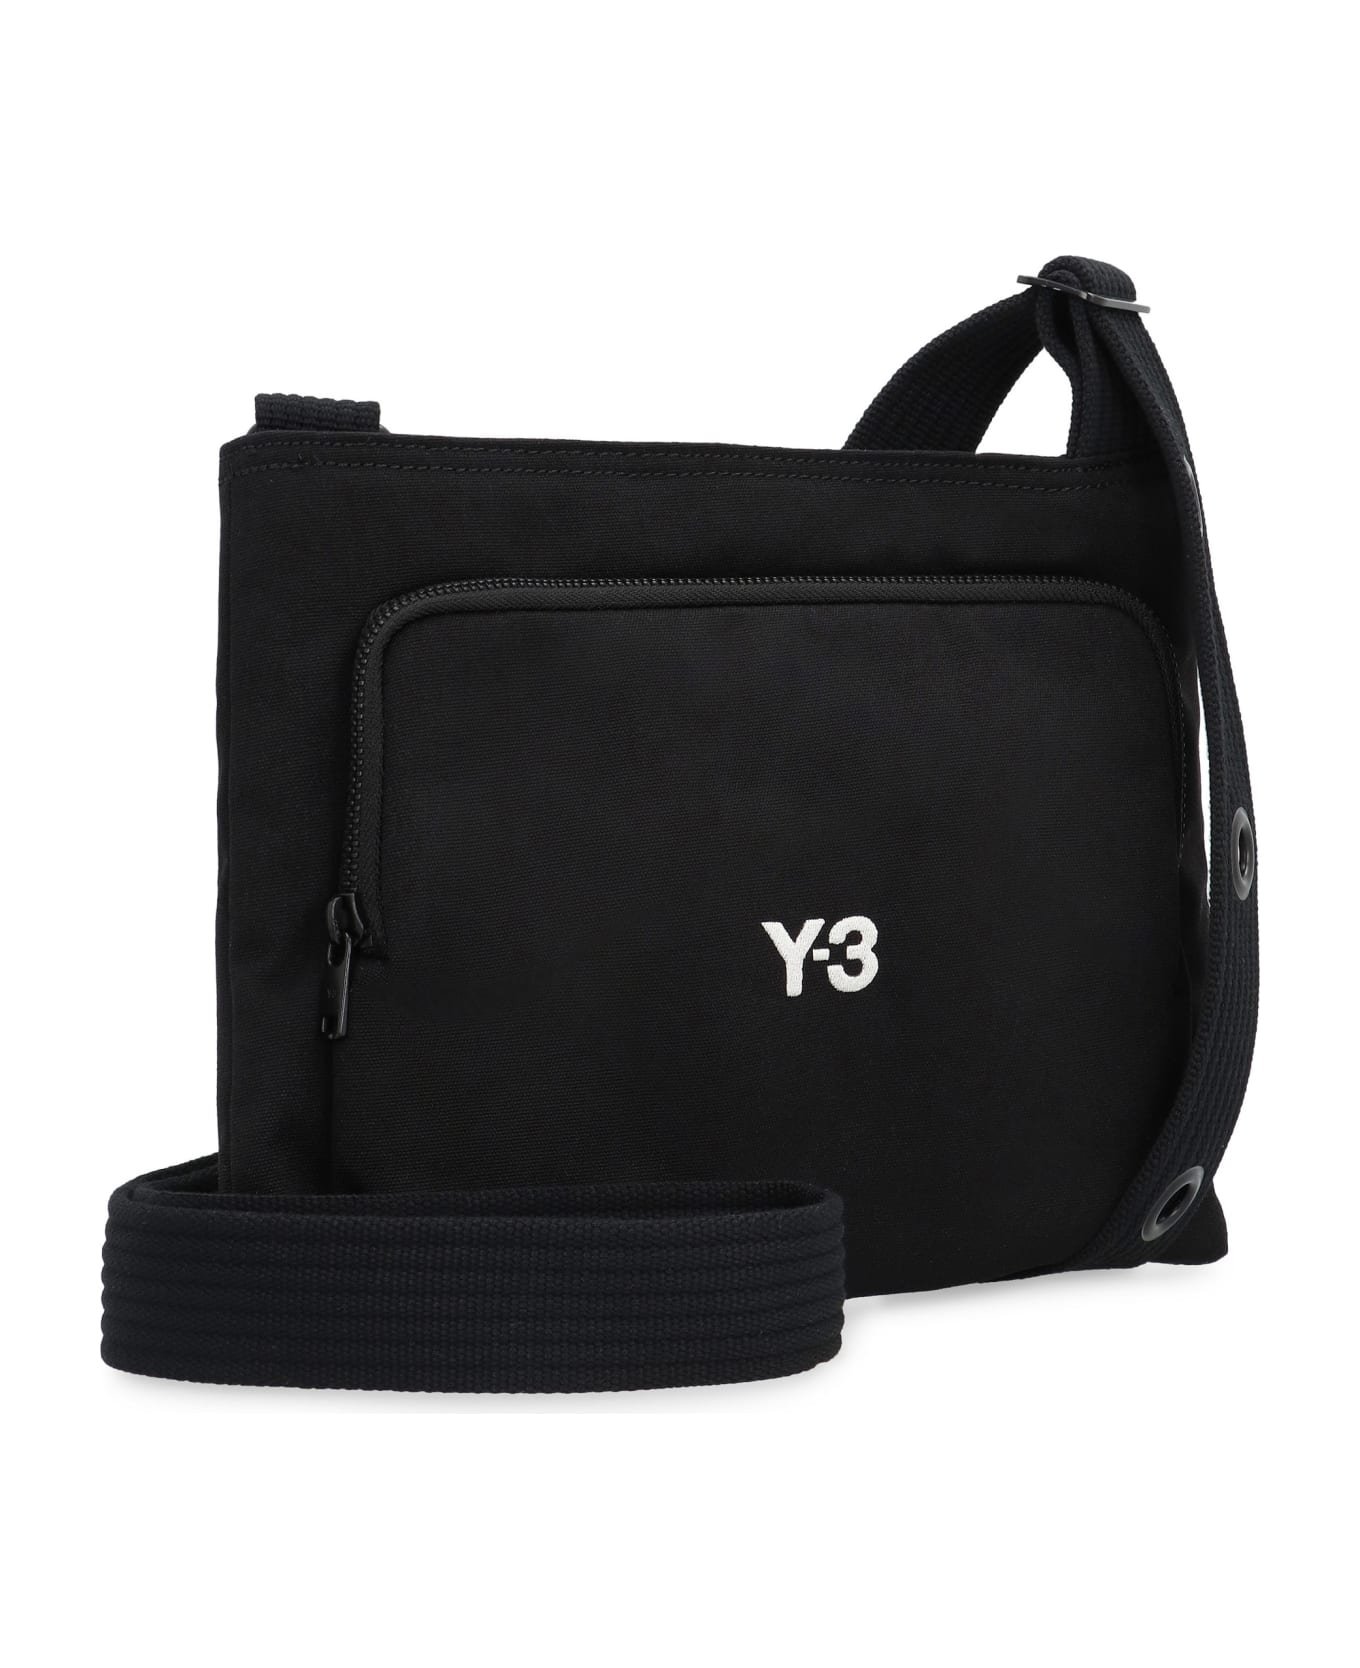 Y-3 Sacoche Fabric Shoulder Bag - Black